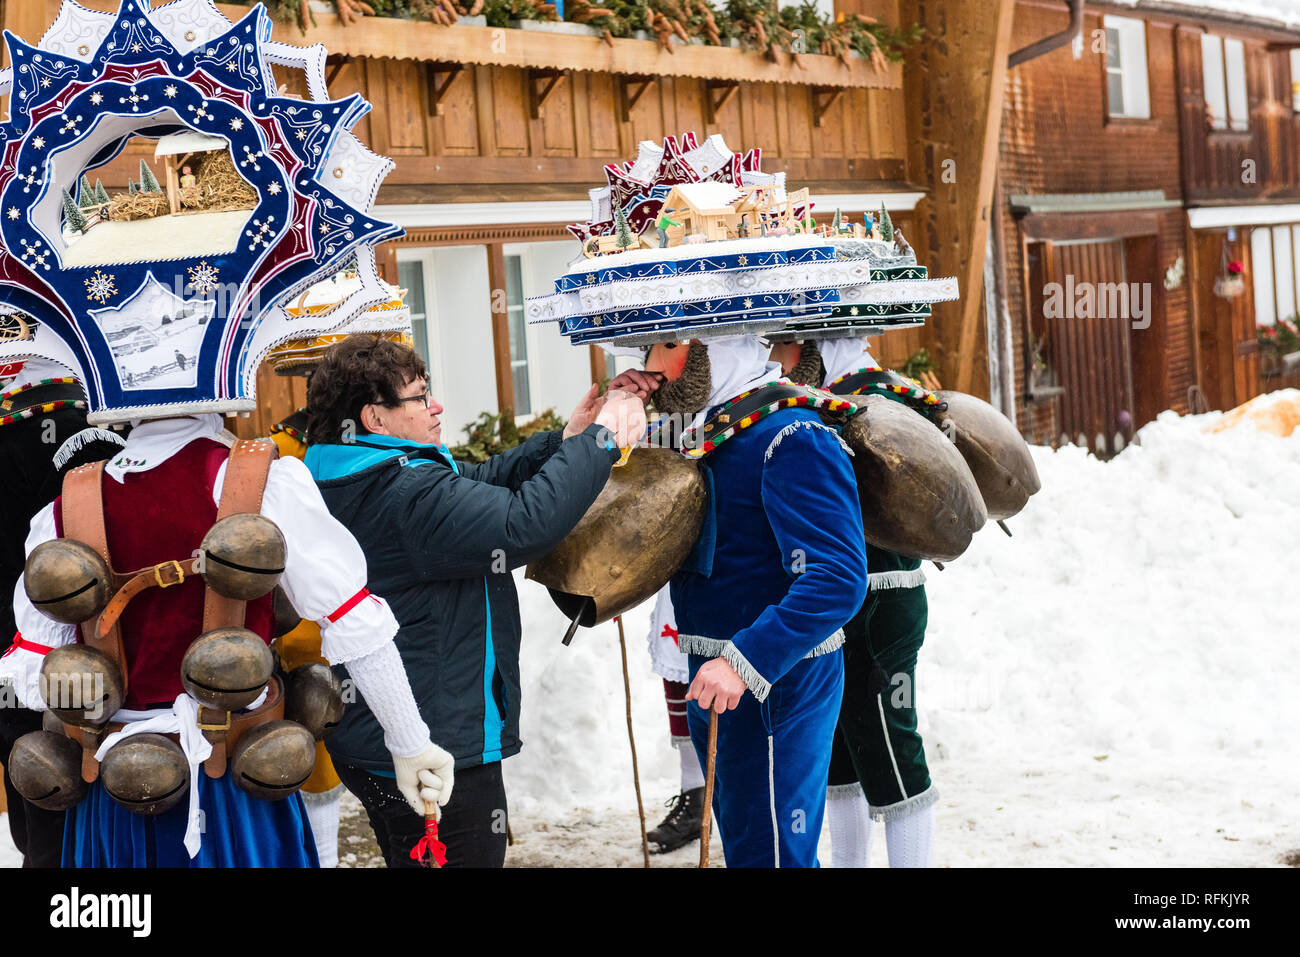 Silvesterklaus ist eine maskierte Person die Teilnahme an Saint Sylvester  Tag feste in Appenzell, Schweiz, und so einen Beitrag zur Erhaltung der Ch  Stockfotografie - Alamy